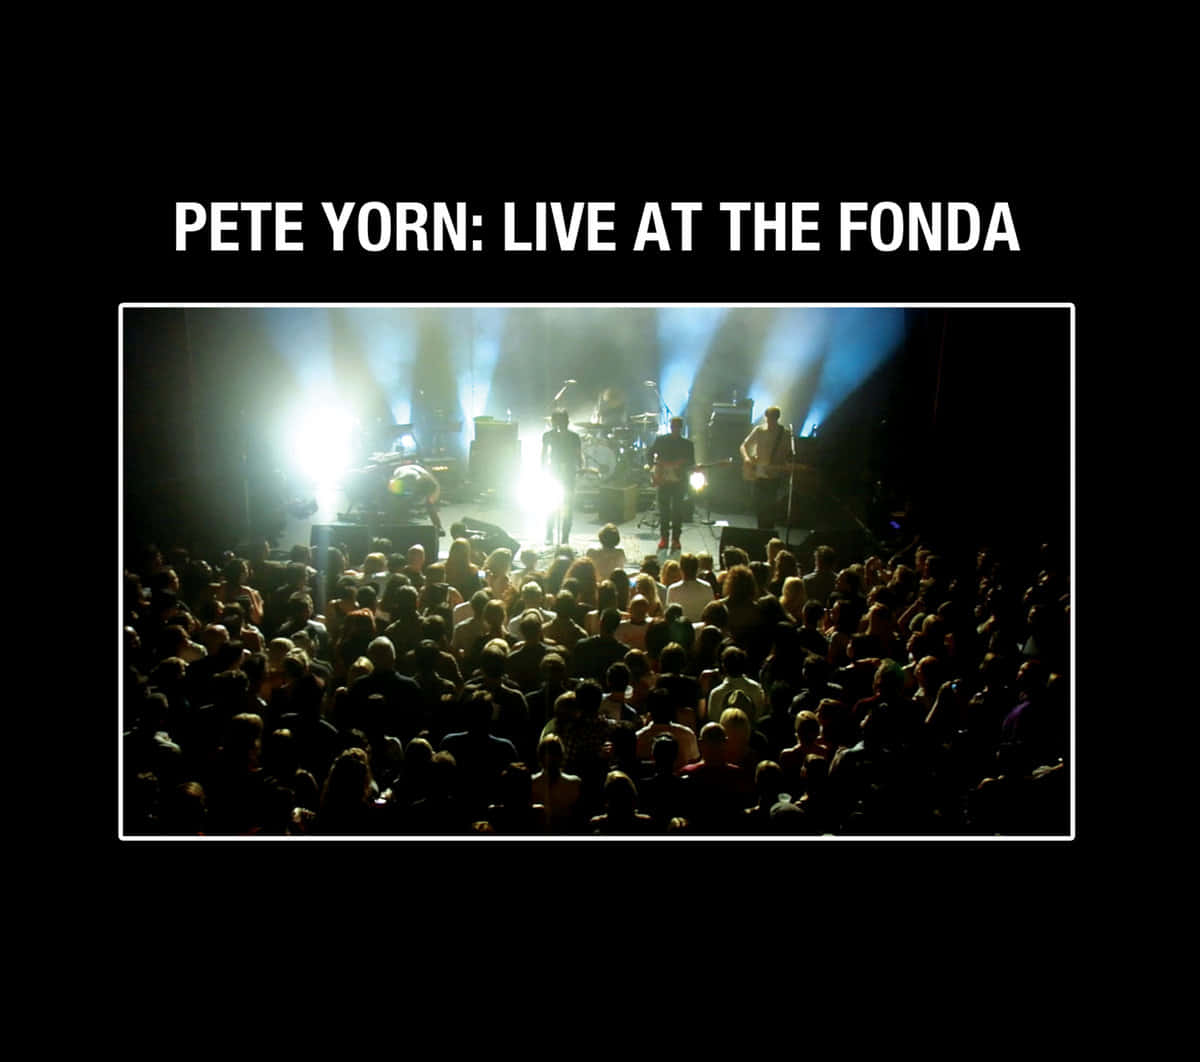 Hintergrundillustrationfür Das Konzert Des Amerikanischen Sängers Pete Yorn